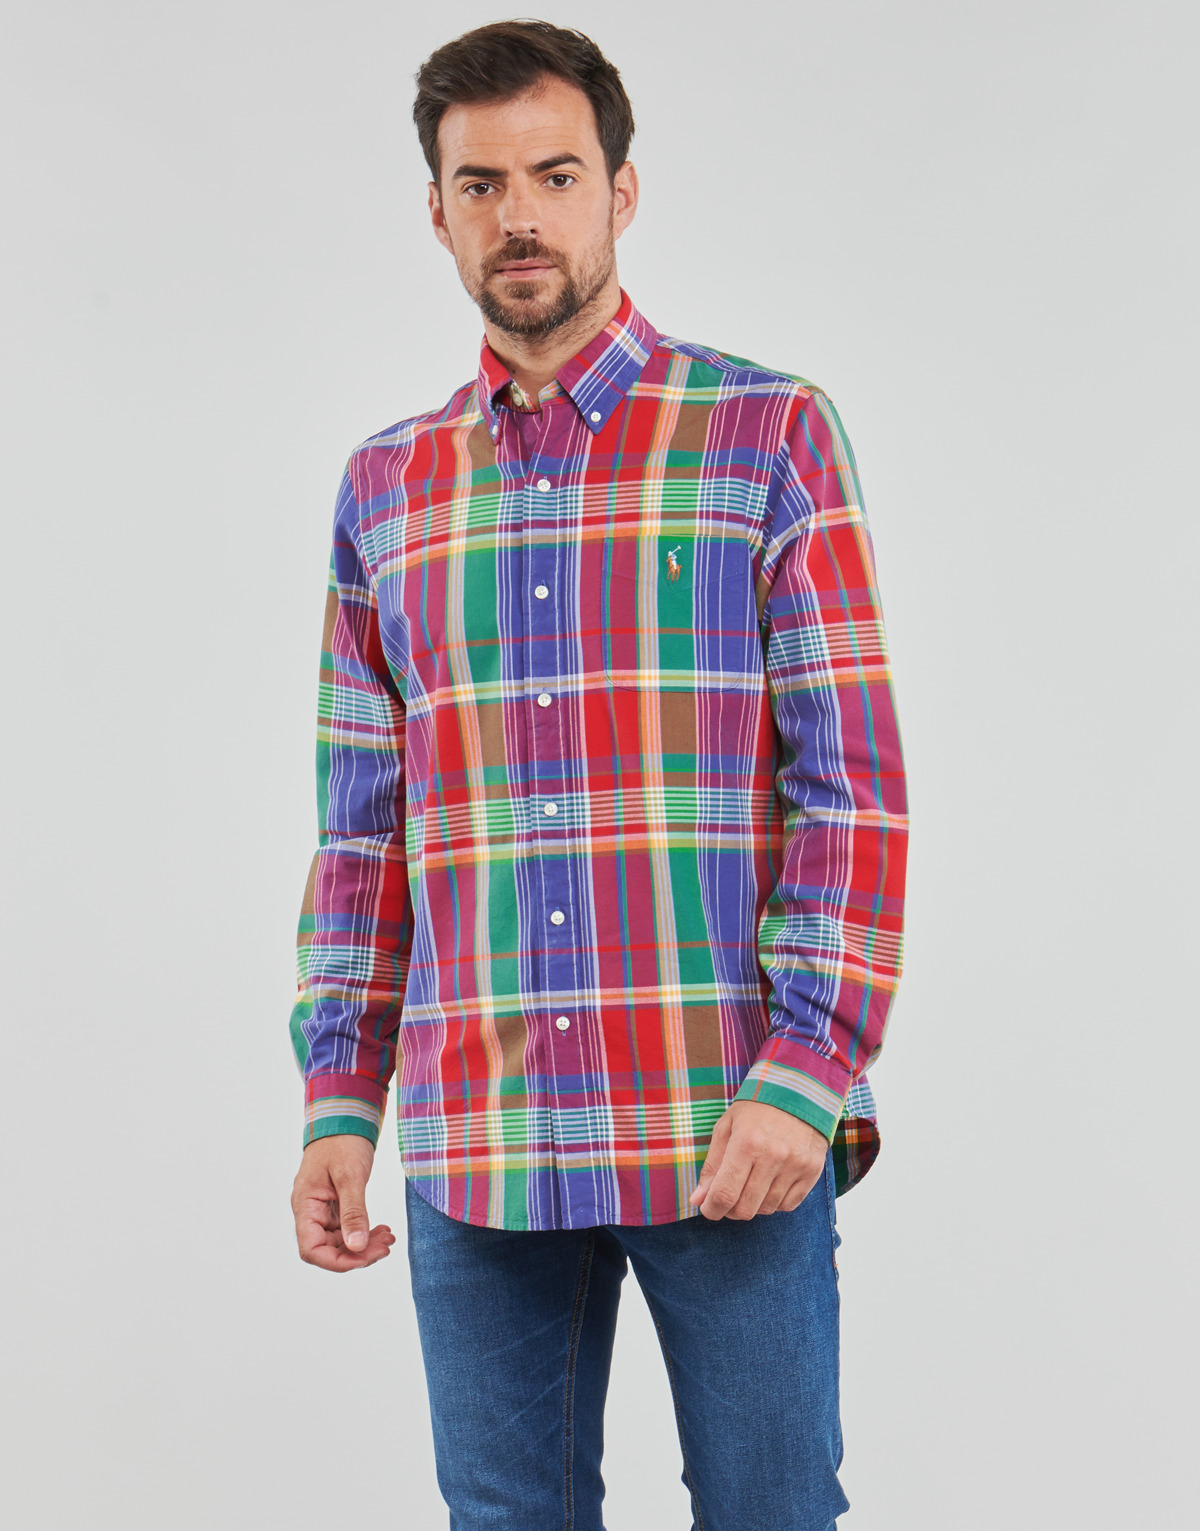 Textil Muži Košile s dlouhymi rukávy Polo Ralph Lauren CUBDPPCS-LONG SLEEVE-SPORT SHIRT Červená / Modrá